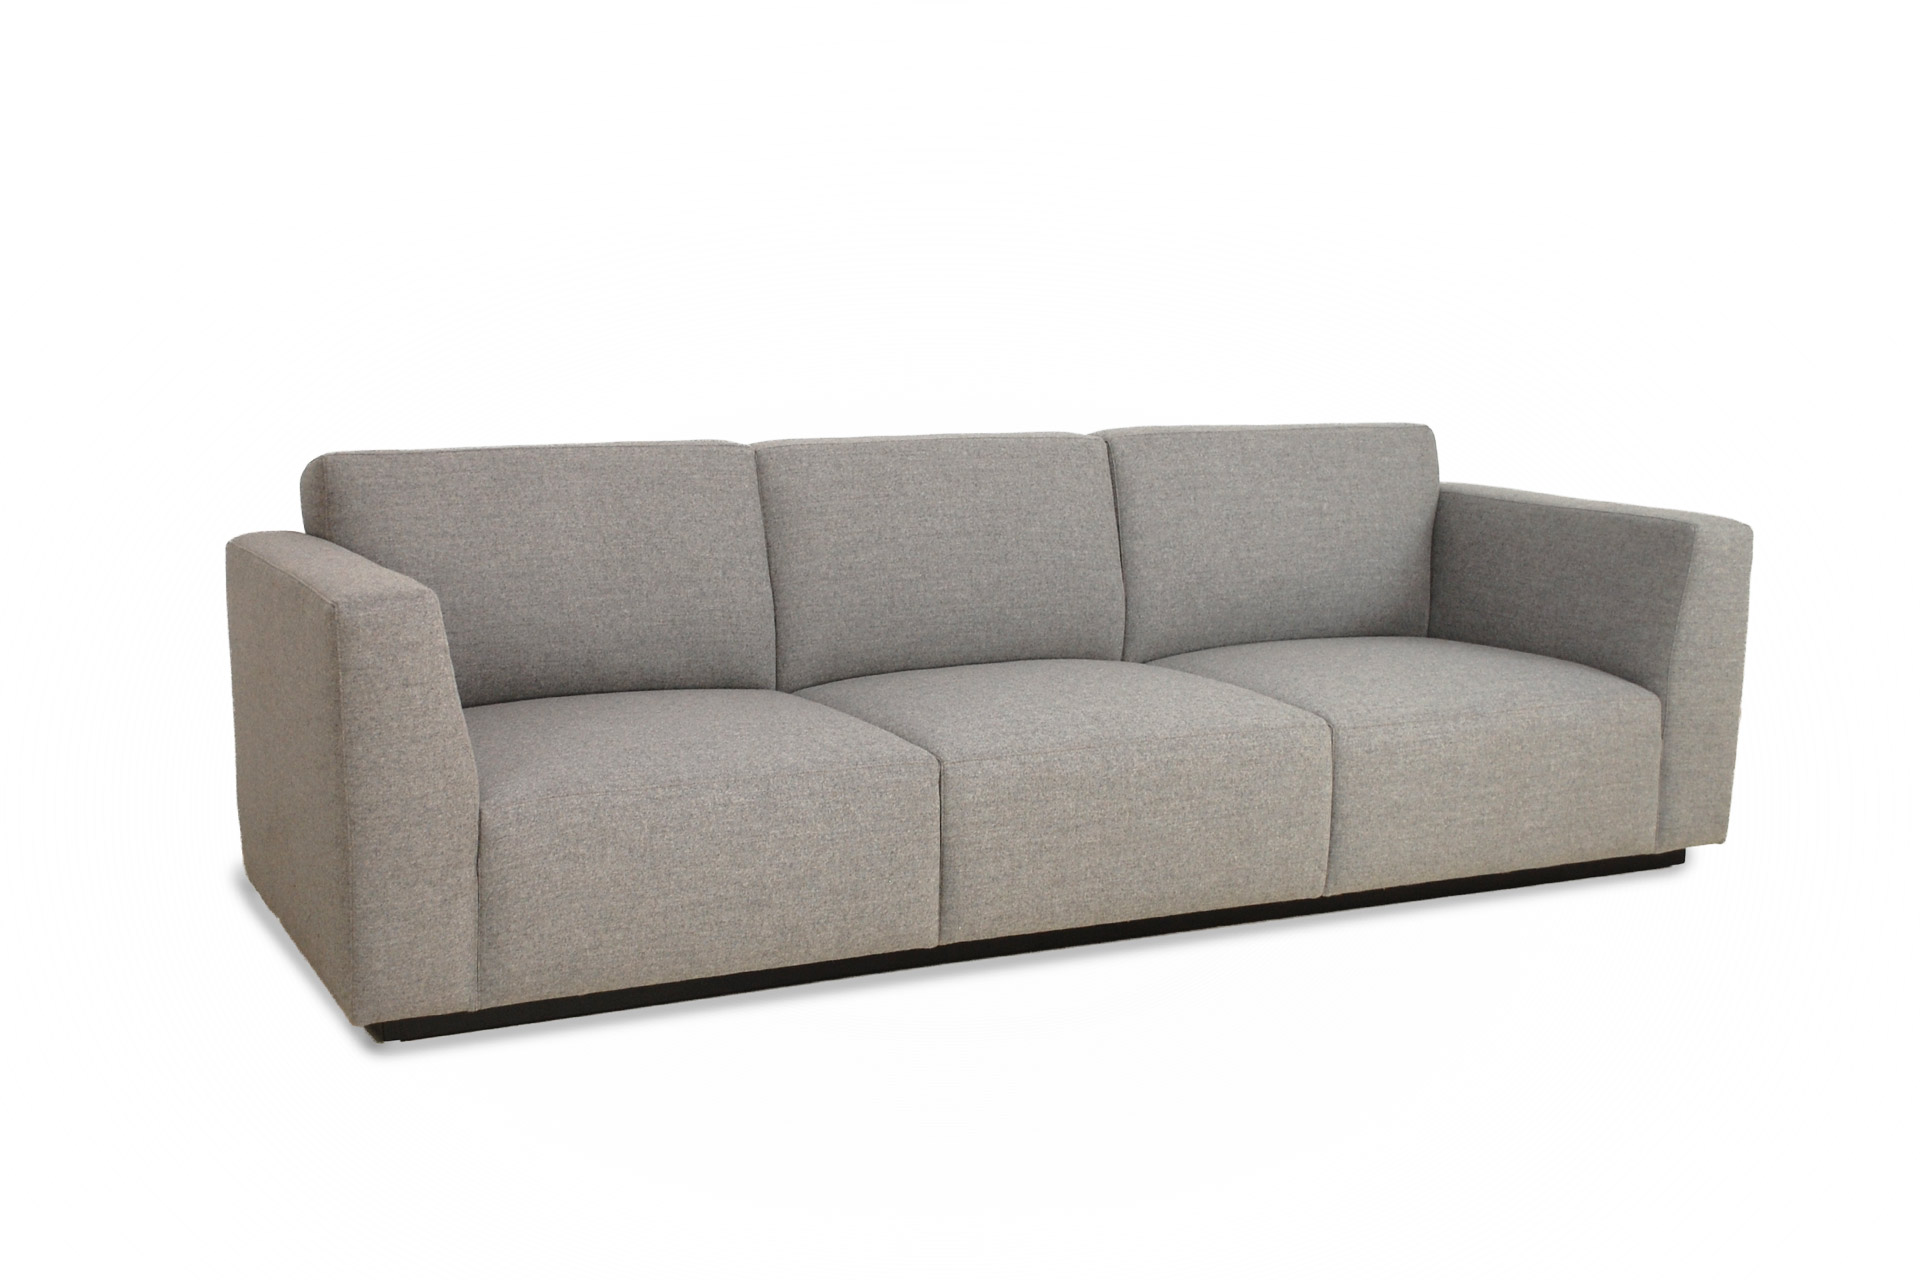 ballard design sofa bed